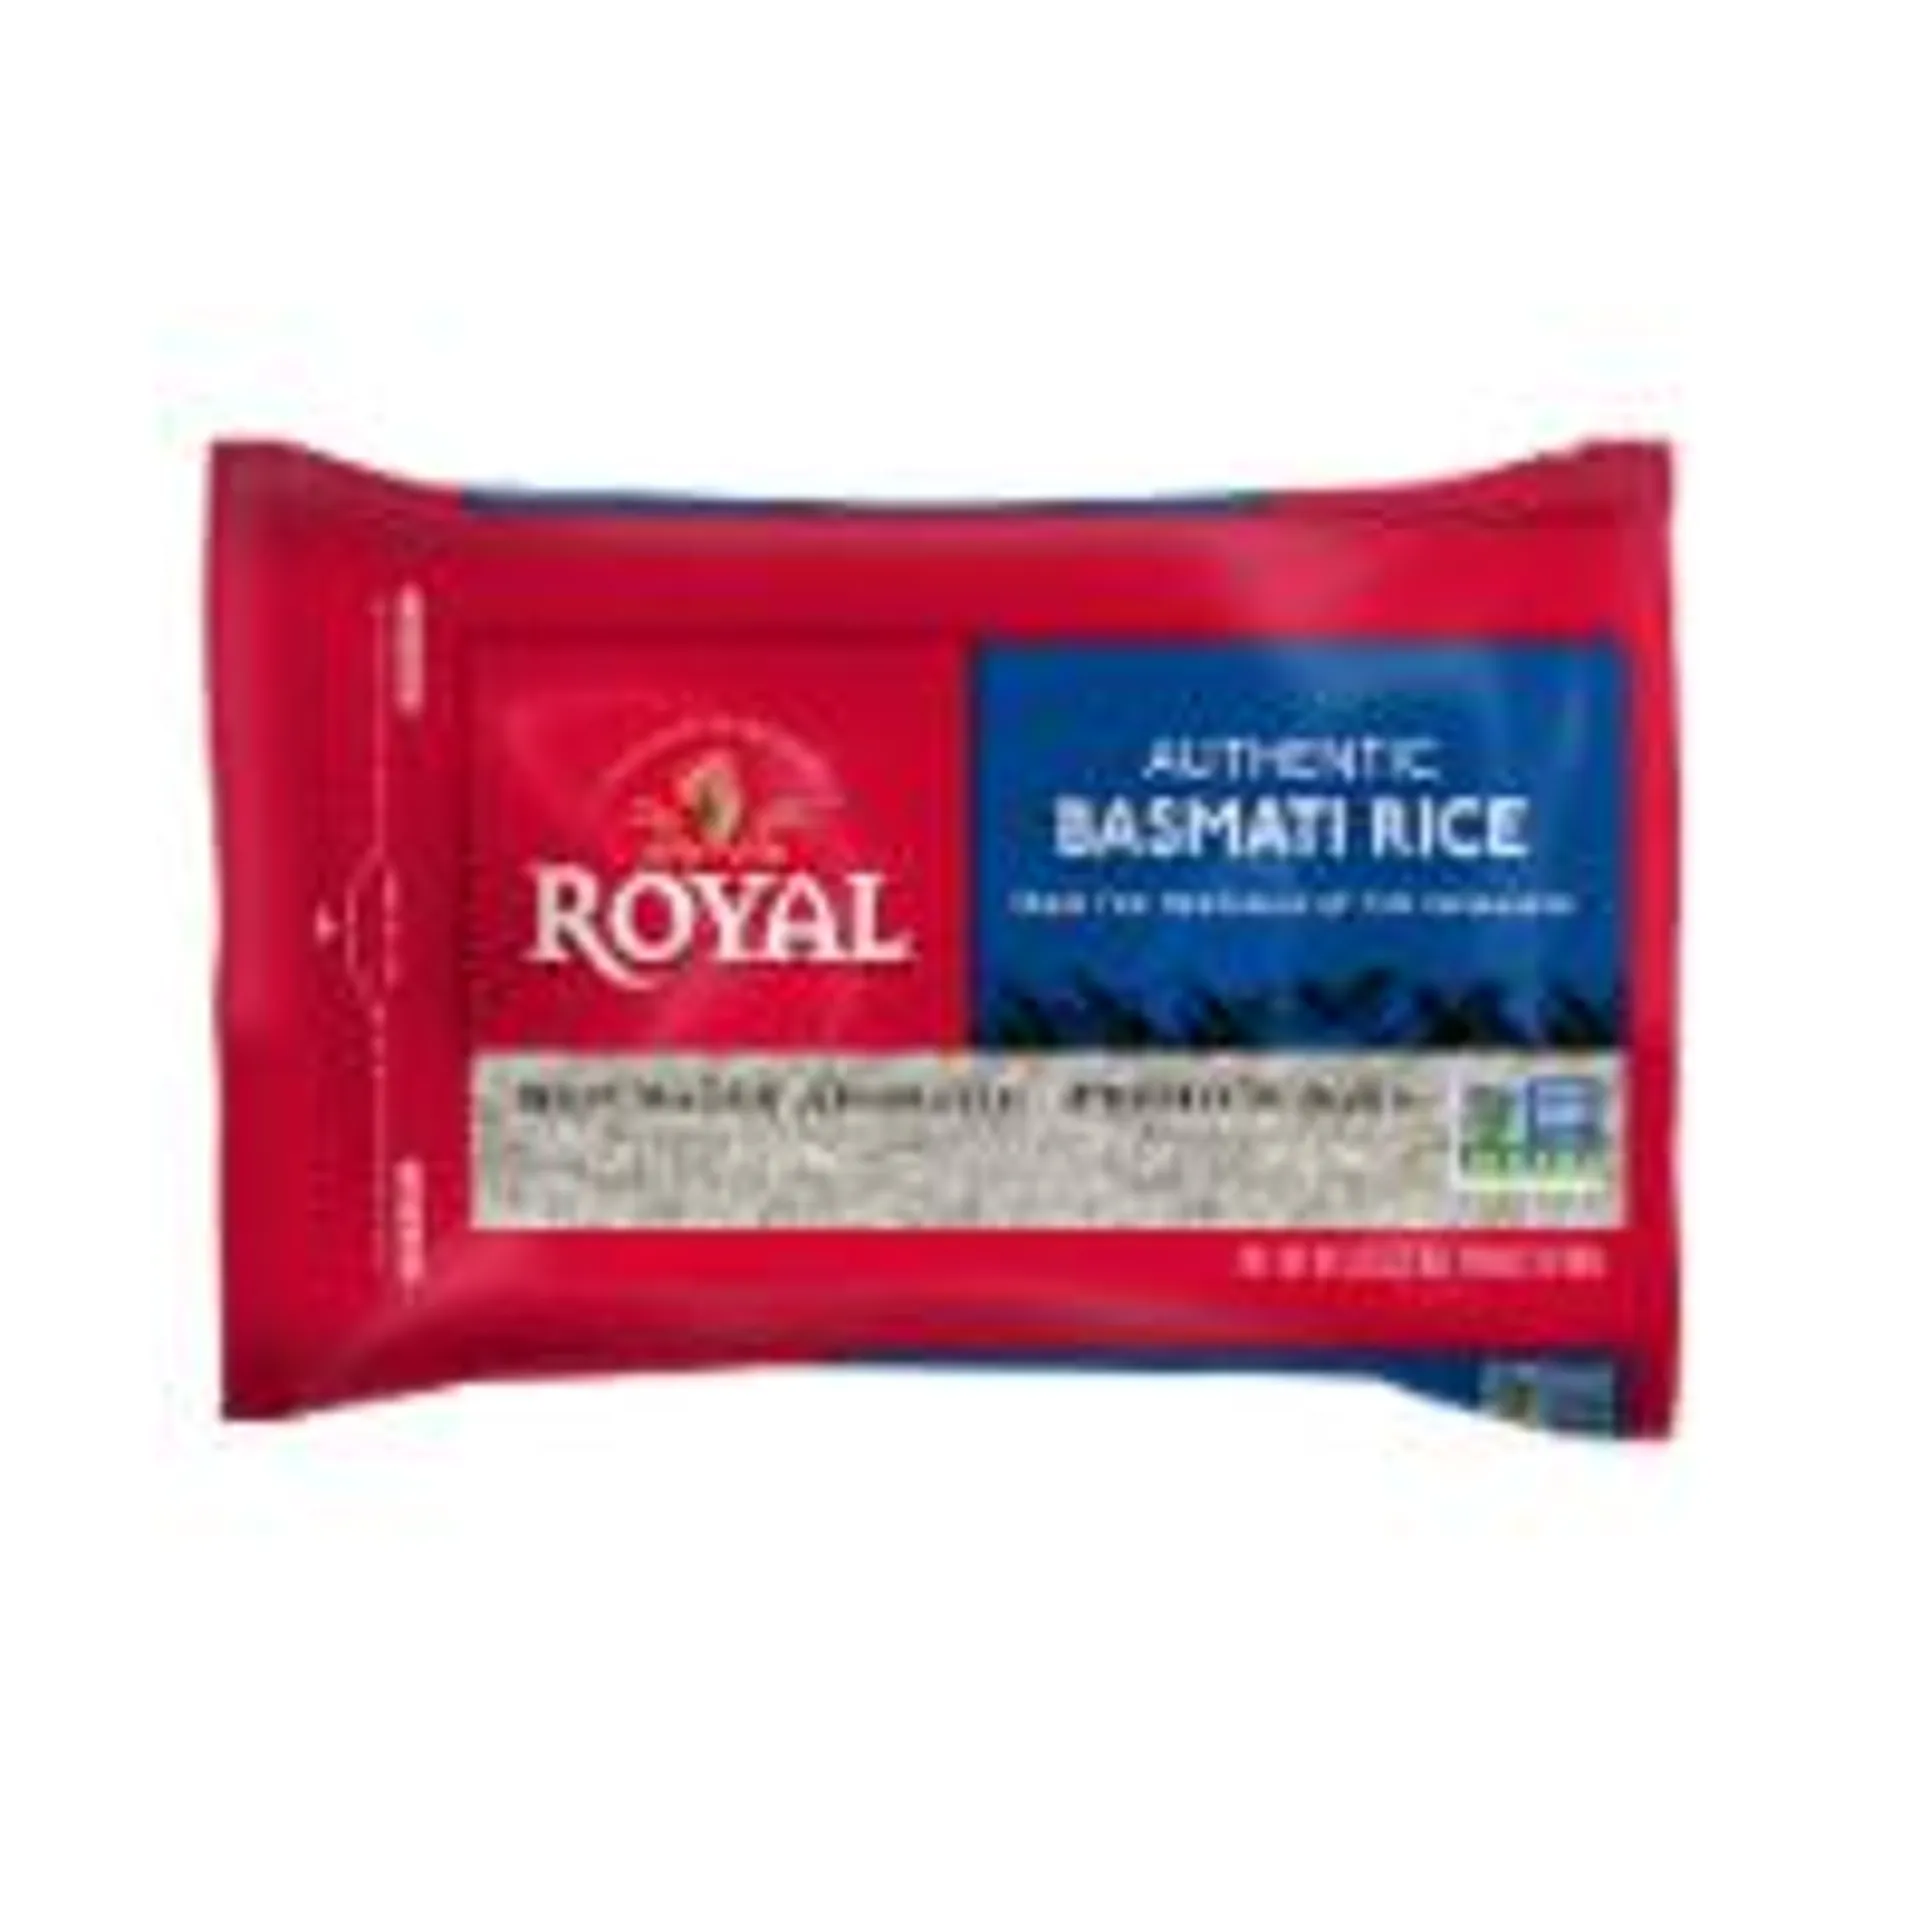 Royal® White Basmati Rice